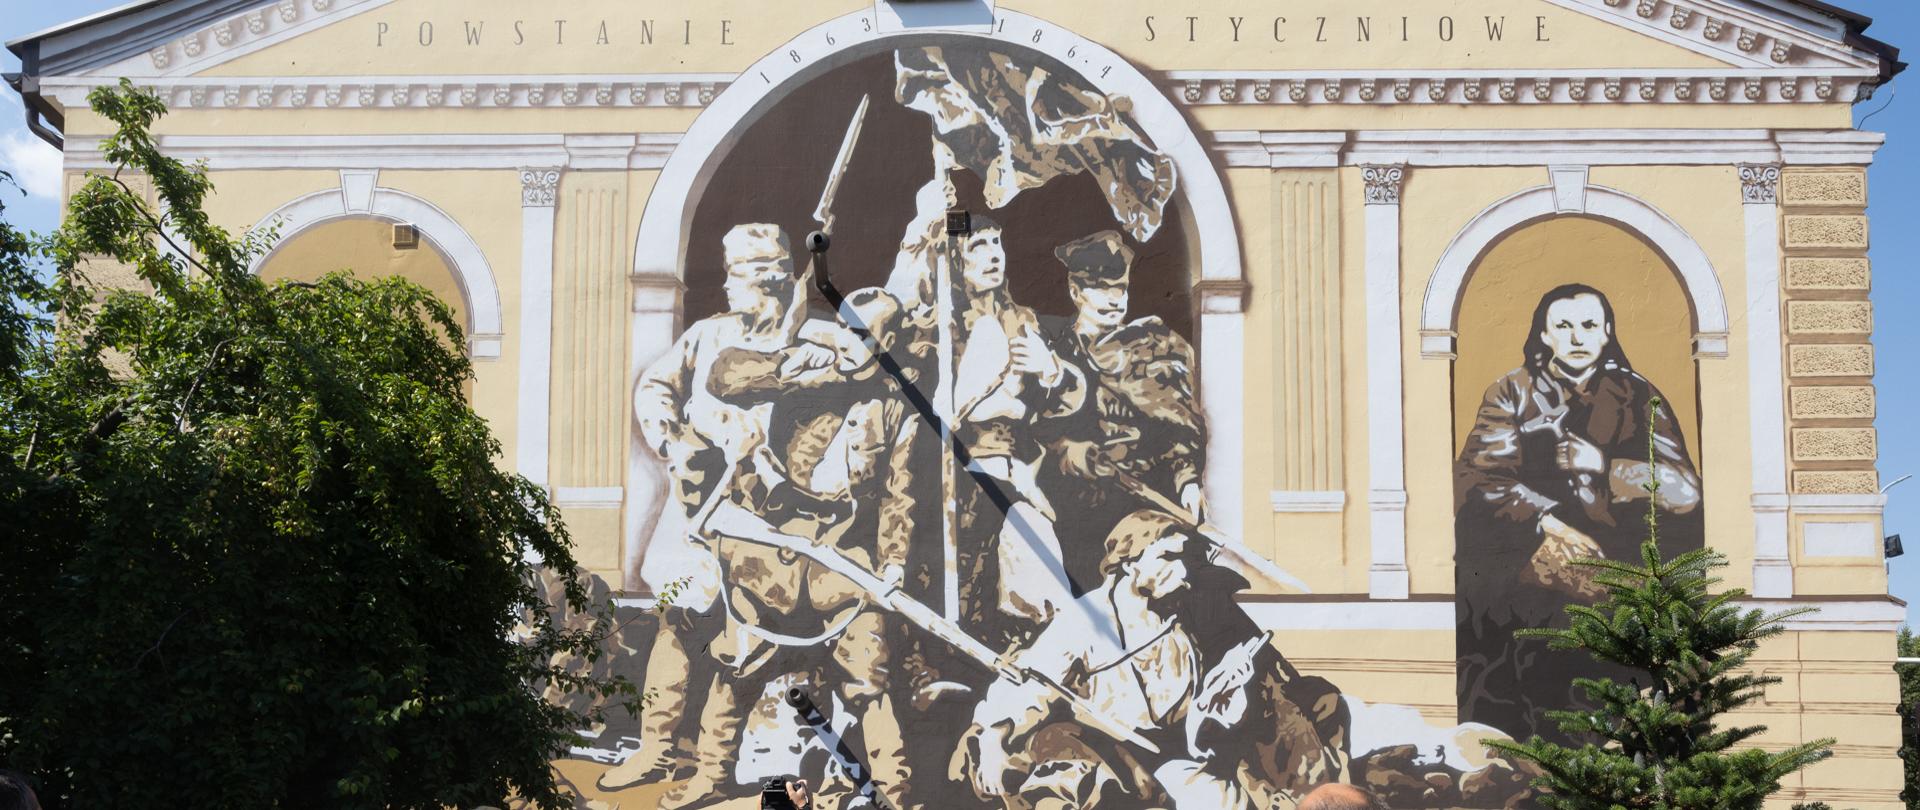 Odsłonięcie muralu poświęconego bohaterom Powstania Styczniowego w Łukowie z udziałem ministra prof. Piotra Glińskiego, fot. Jacek Domiński